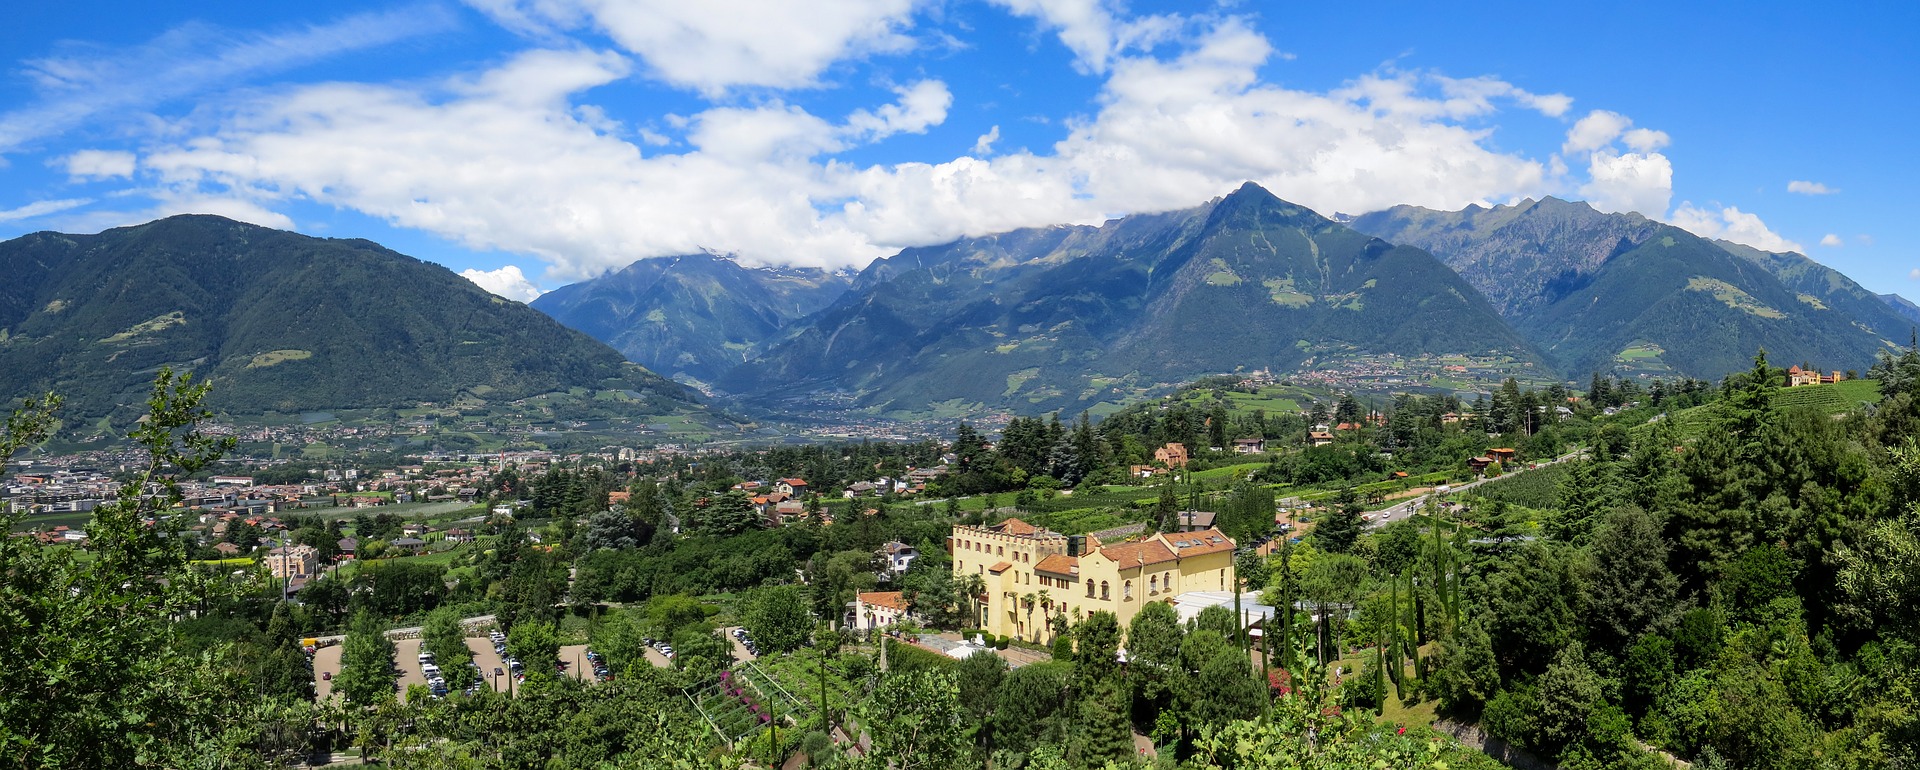 Ein Tal in Südtirol, in dem Wein angebaut wird, im Hintergrund die Alpen